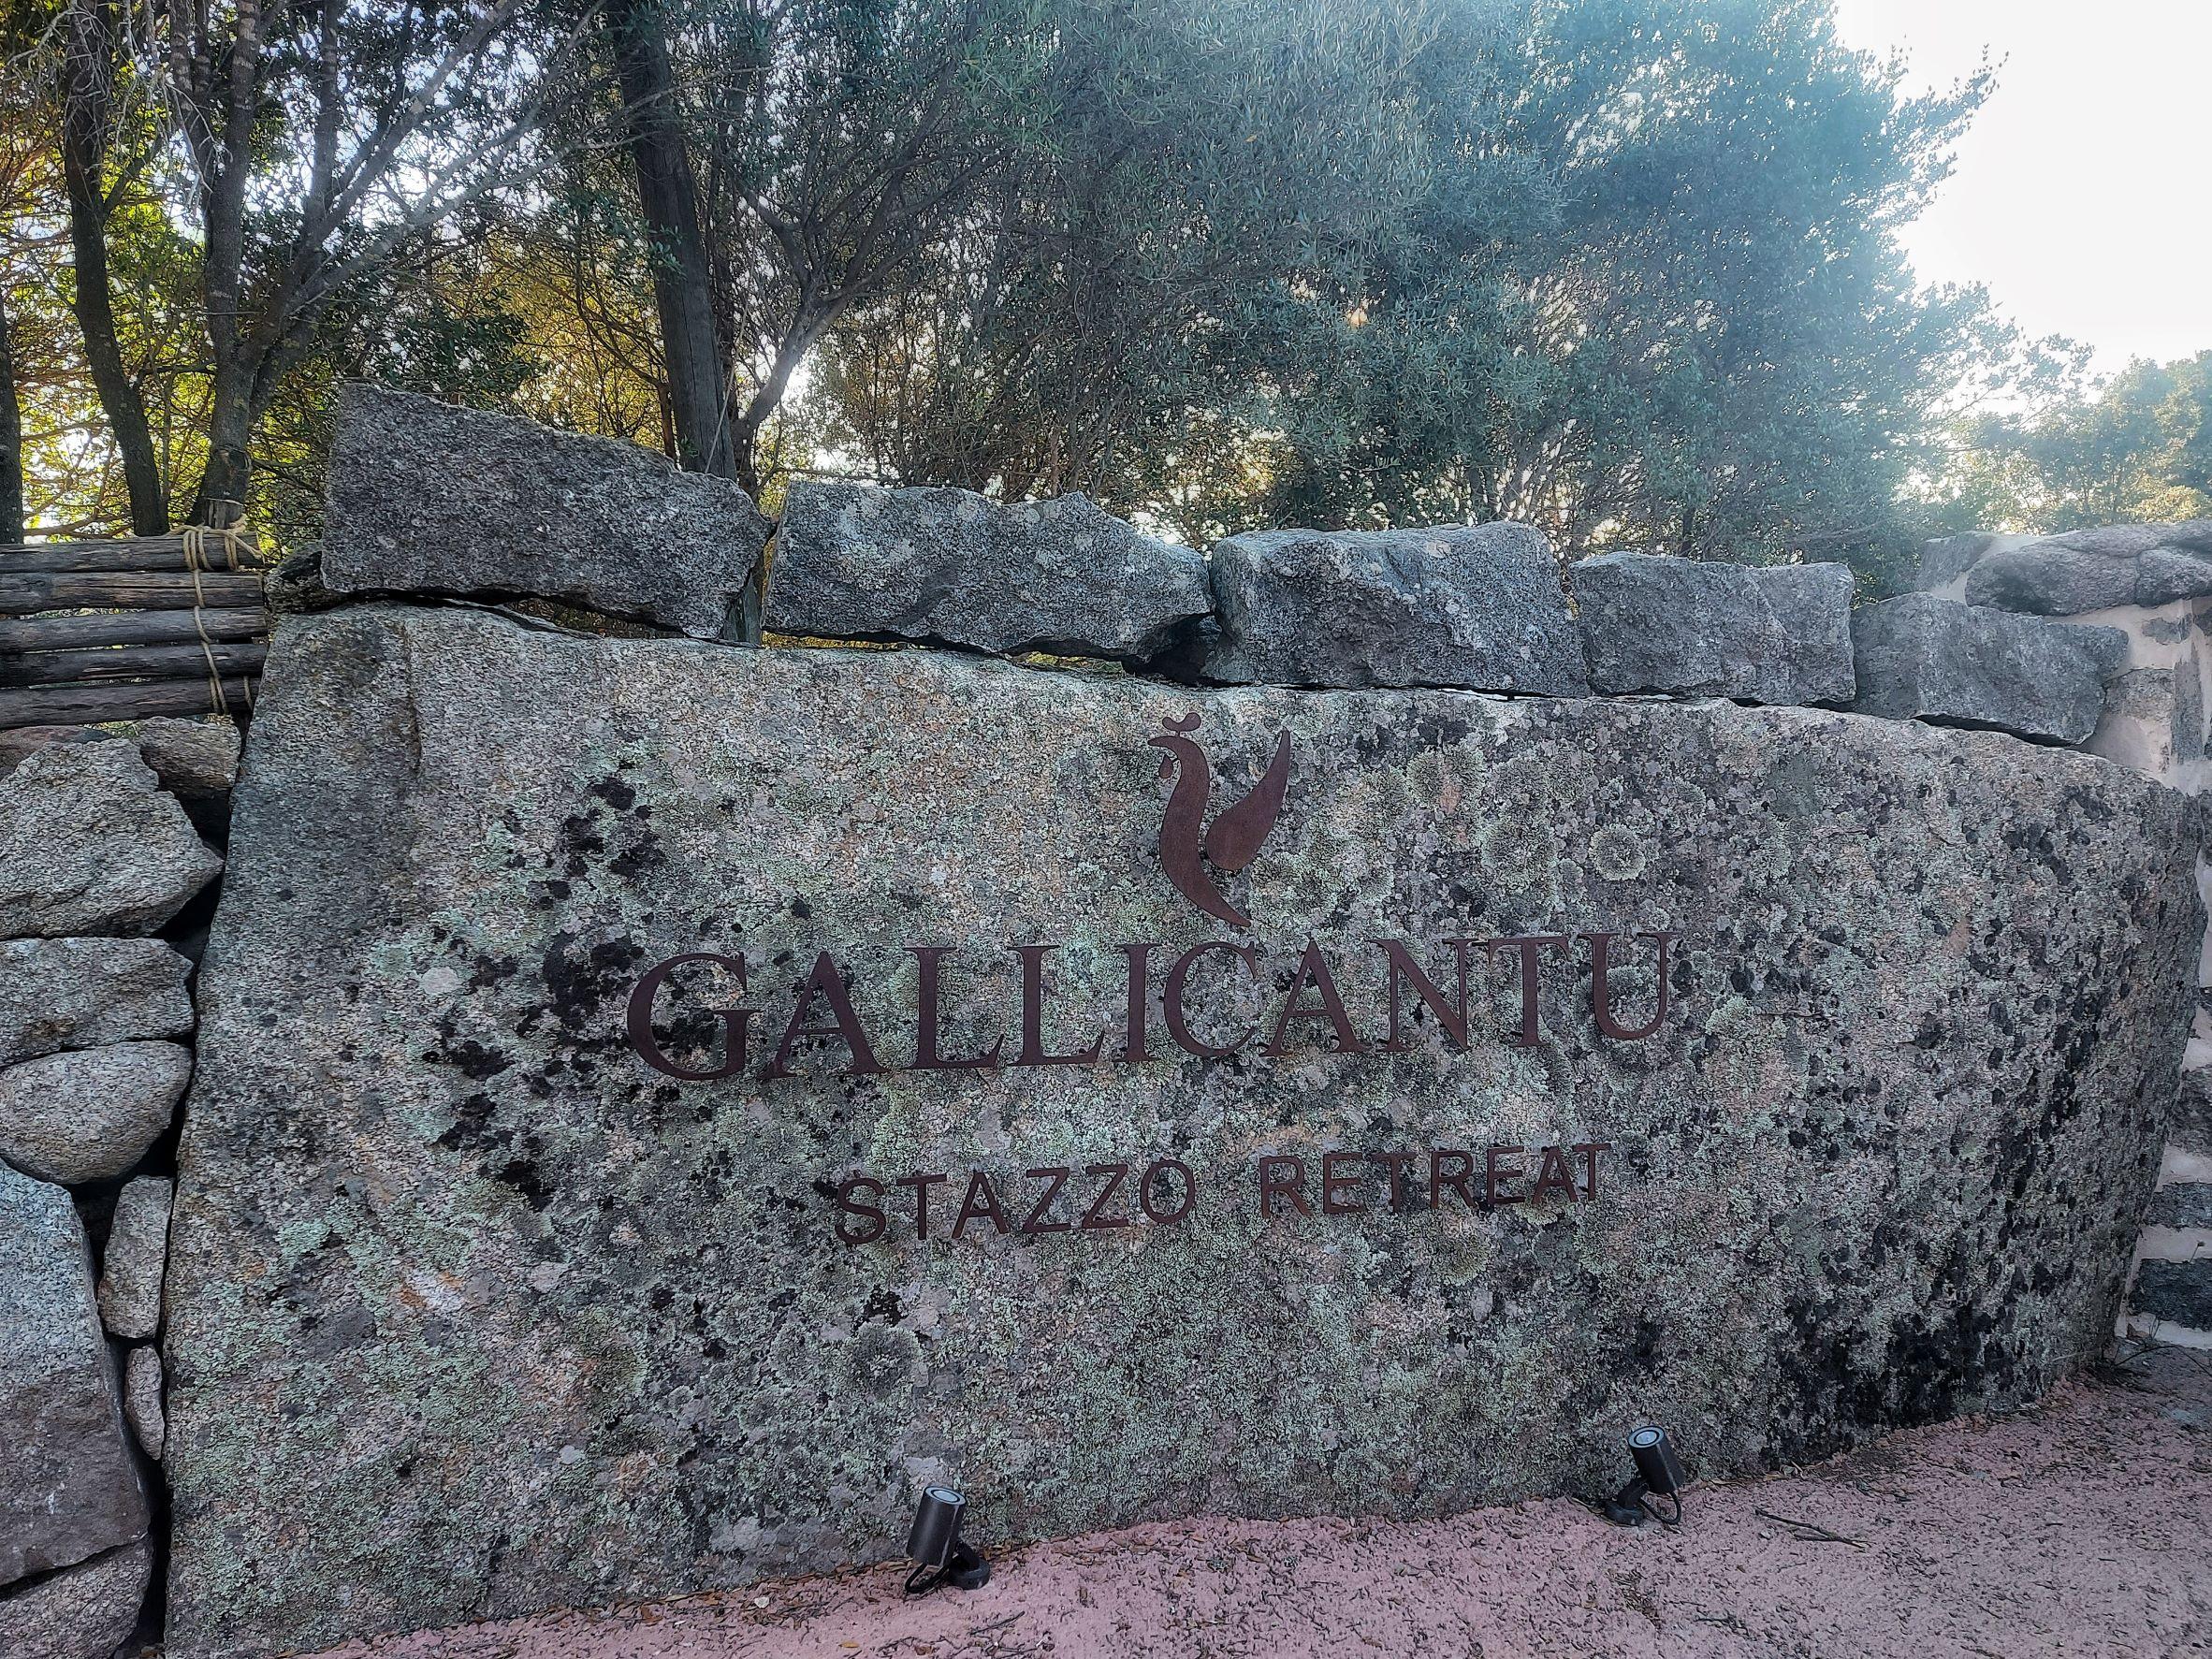 Gallicantu Retreat